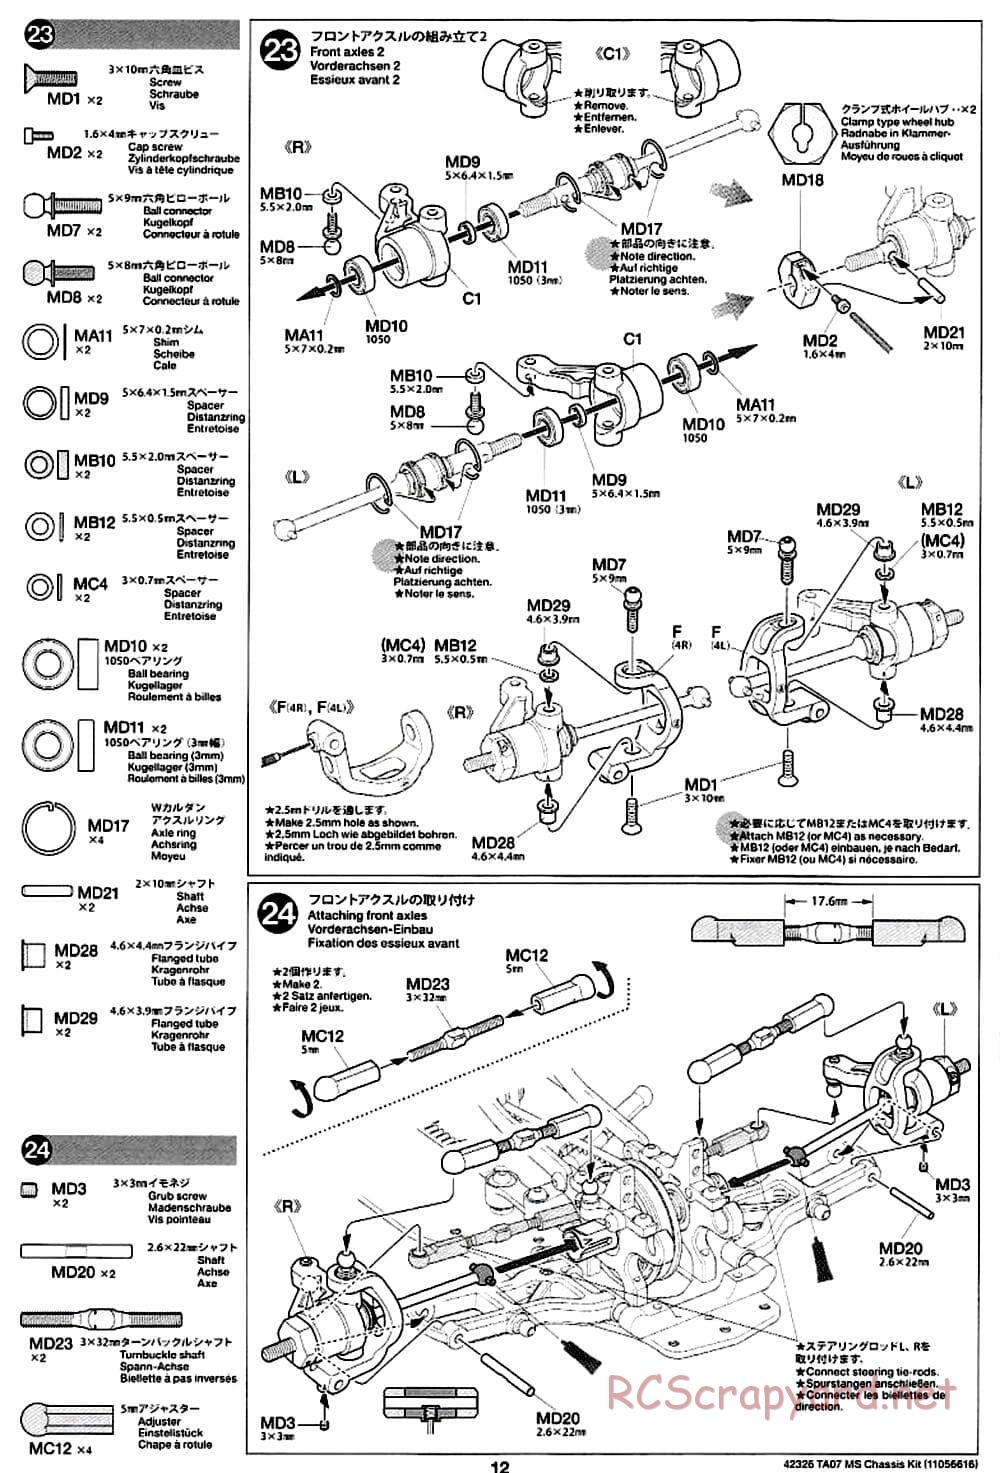 Tamiya - TA07 MS Chassis - Manual - Page 12